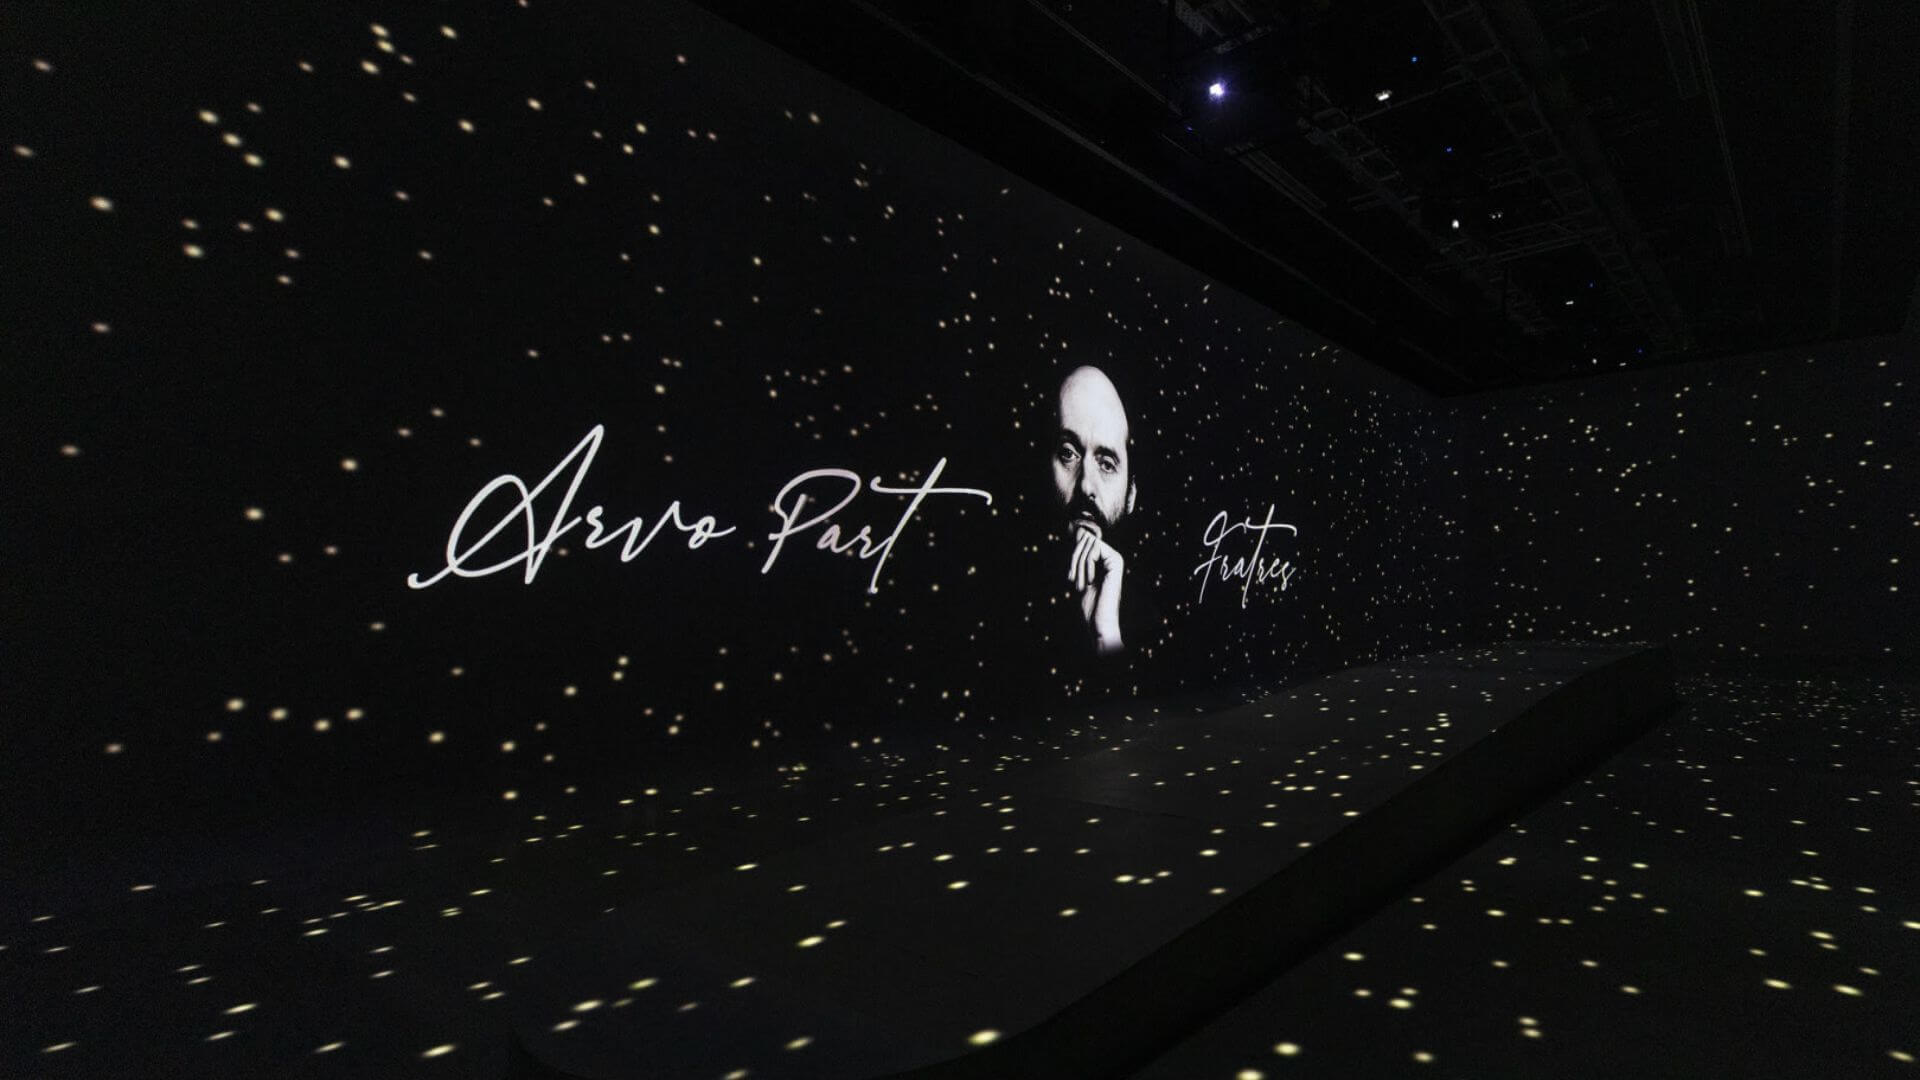 La experiencia inmersiva con música de Arvo Pärt abre sus puertas